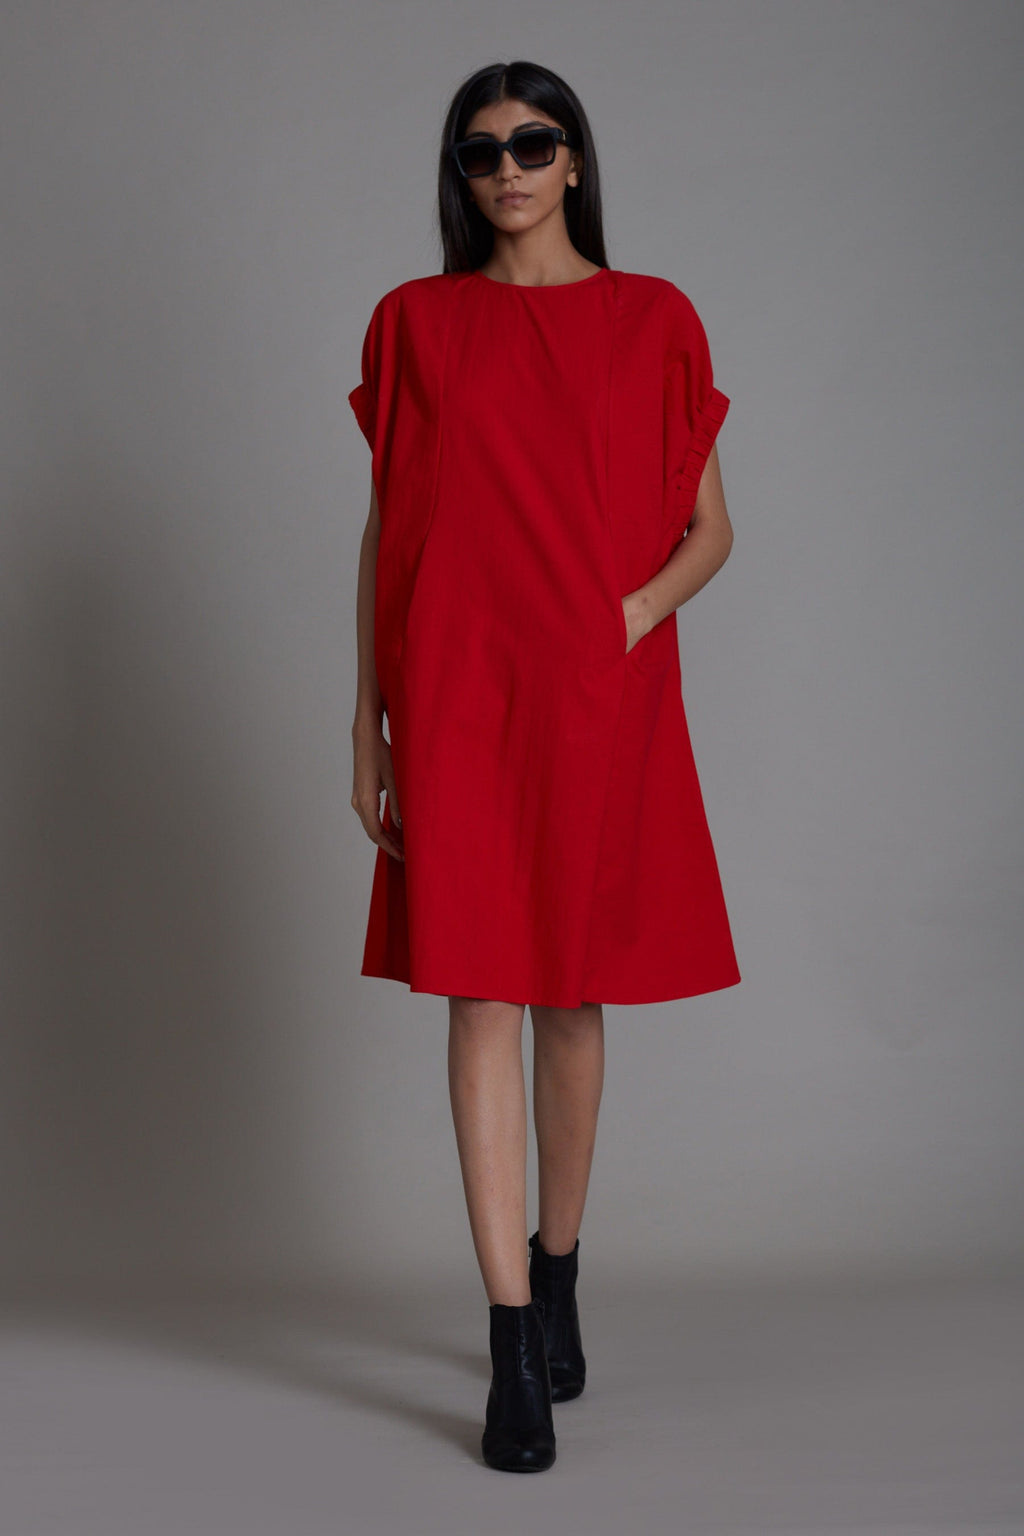 Mati Dresses XS Red Pocket Dress